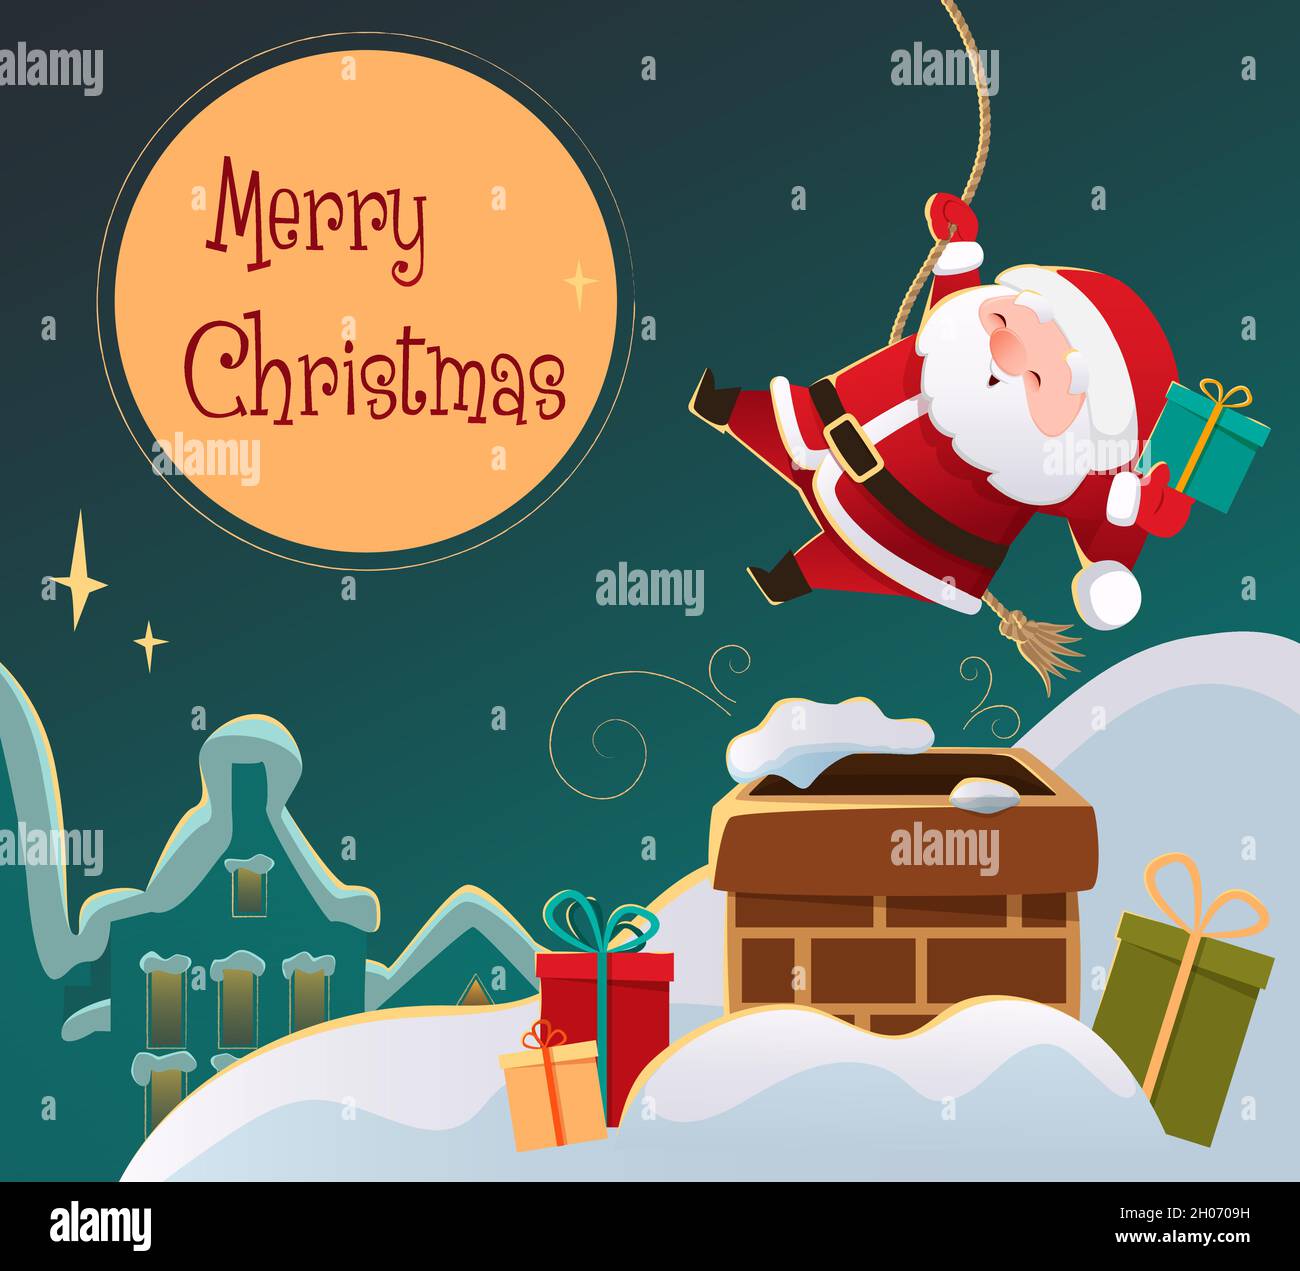 Der niedliche Weihnachtsmann geht den Kamin auf dem Dach des Hauses hinunter. Weihnachtskarte, Hintergrund, Banner im Cartoon-Stil. Vektorgrafik Stock Vektor